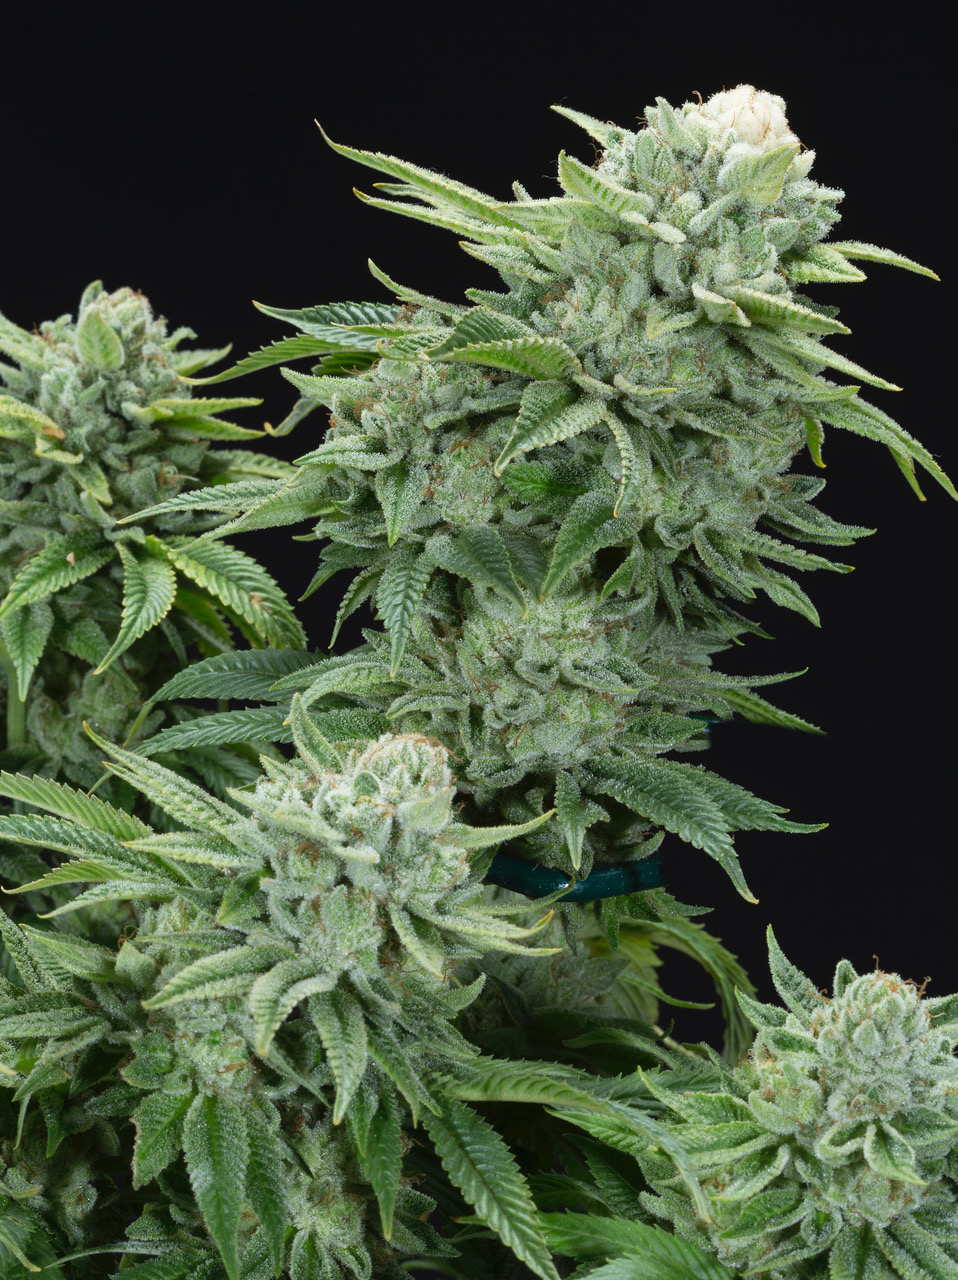 Buy Gorilla Glue Marijuana Seeds Online - graines de cannabis